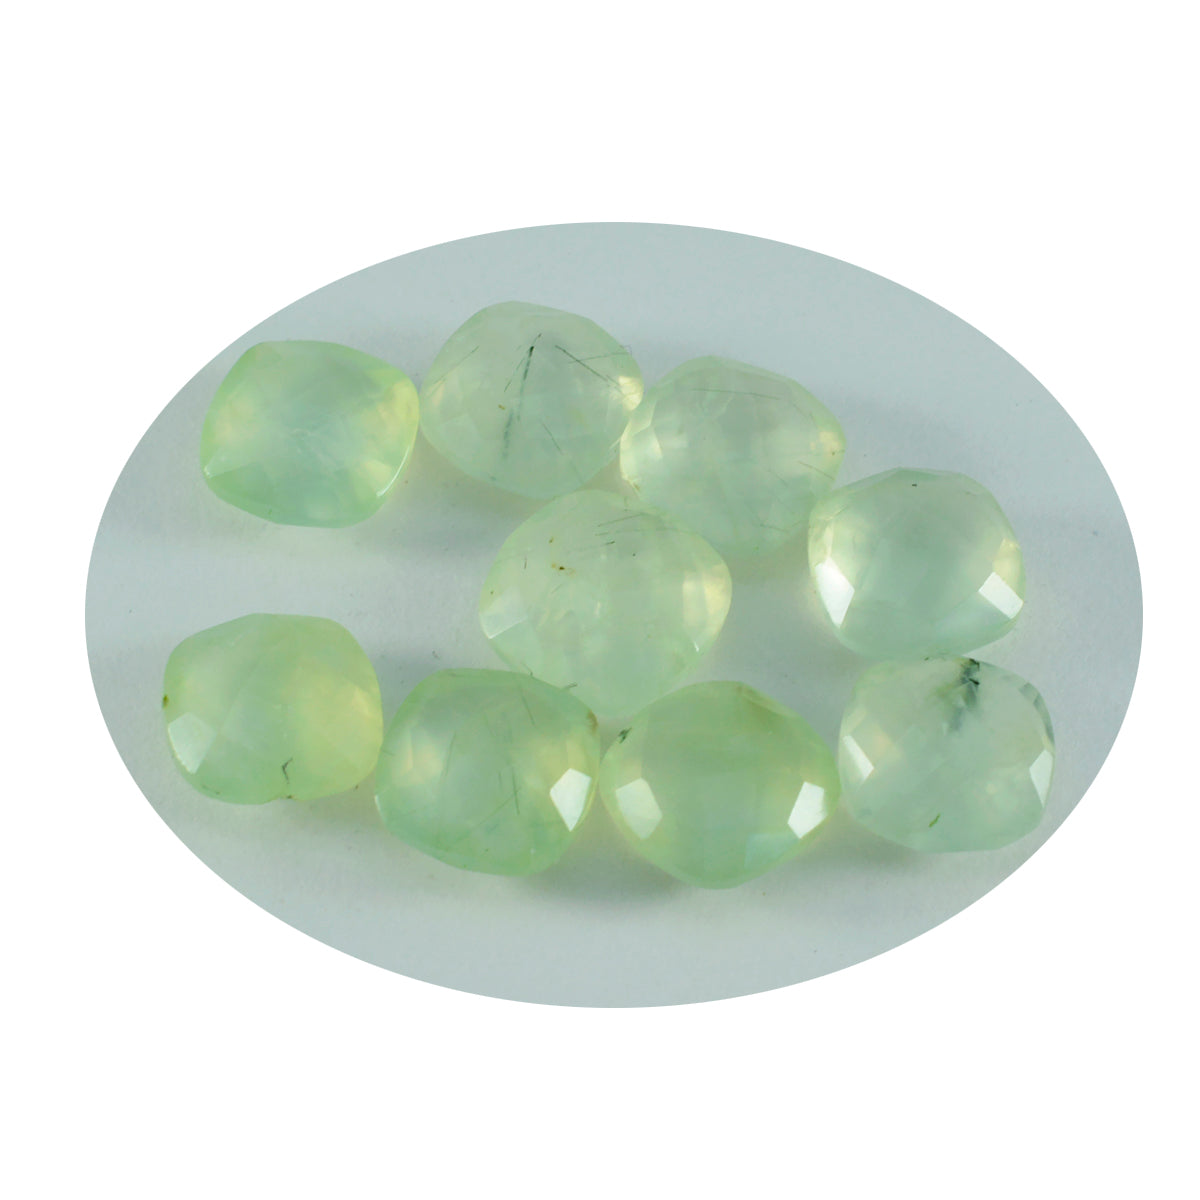 riyogems 1 шт. зеленый пренит граненый 4x4 мм в форме подушки качество AAA свободный драгоценный камень